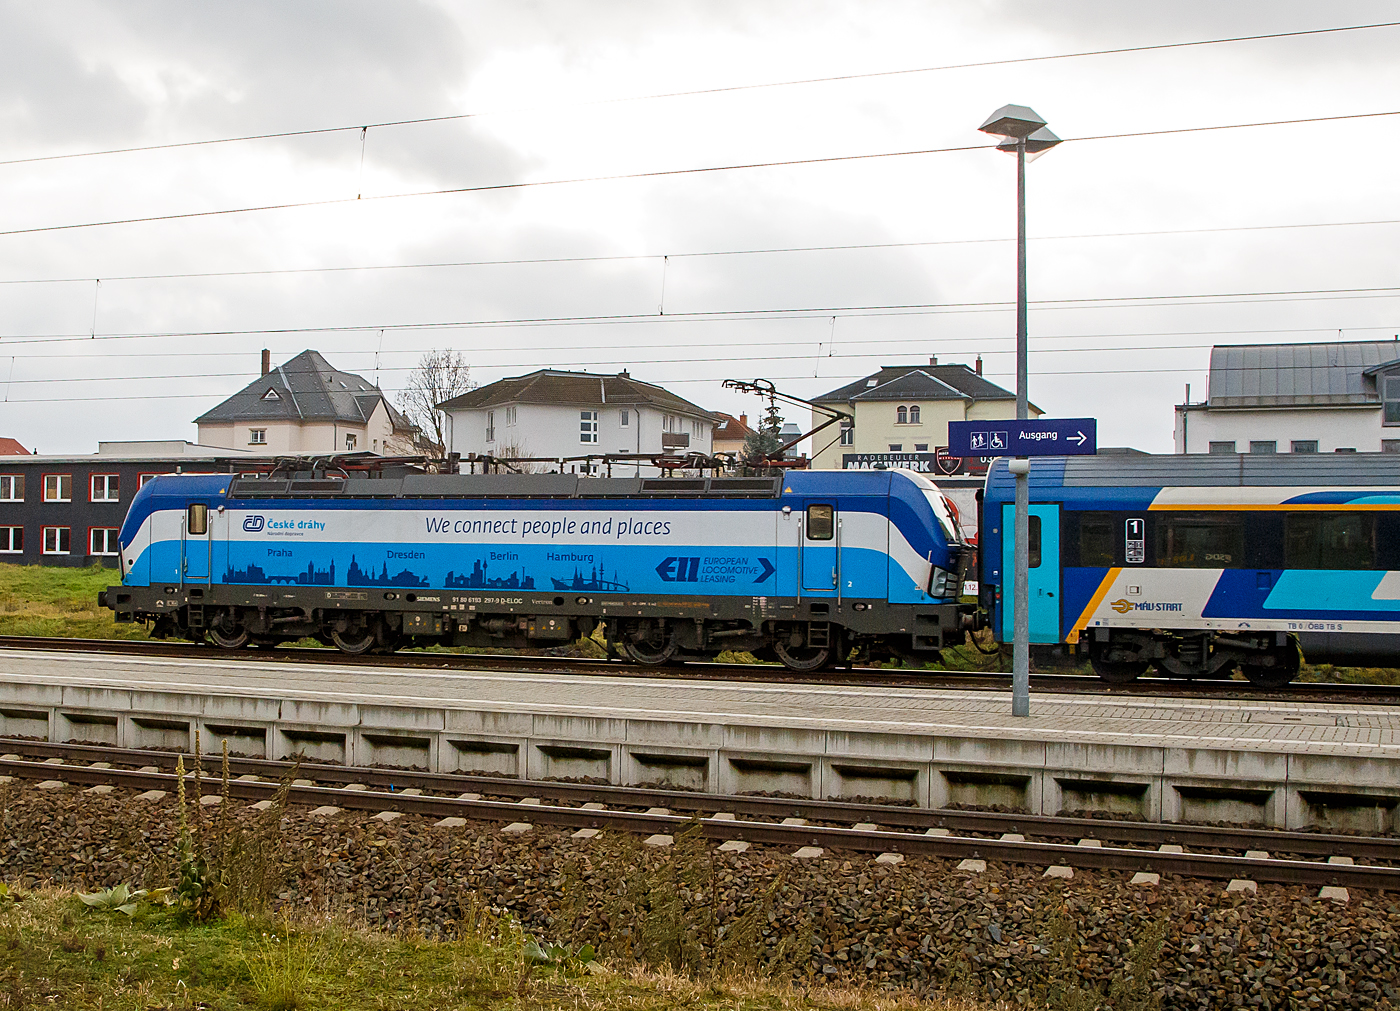 Die an die ČD - České dráhy a.s. (Praha / Prag) vermietete Siemens Vectron MS 193 297-9  Seppl  (91 80 6193 297-9 D-ELOC) der ELL - European Locomotive Leasing (Wien) rauscht am 07.12.2022, mit dem ungarischen MÁV-START EC 253 (Hamburg-Altona – Dresden – Prag - Bratislava - Budapest-Nyugati), durch Radebeul Ost in Richtung Dresden. 

Die Siemens Vectron MS wurde 2017 von Siemens Mobilitiy in München-Allach unter der Fabriknummer 22235 gebaut und an die ELL geliefert. Die Vectron MS mit einer Leistung von 6.4 MW ist für 200 km/h, 
in Deutschland, Österreich, Ungarn, Polen, Tschechien, Slowakei und Rumänien (D/A/H/PL/CZ/SK/RO) zugelassen.